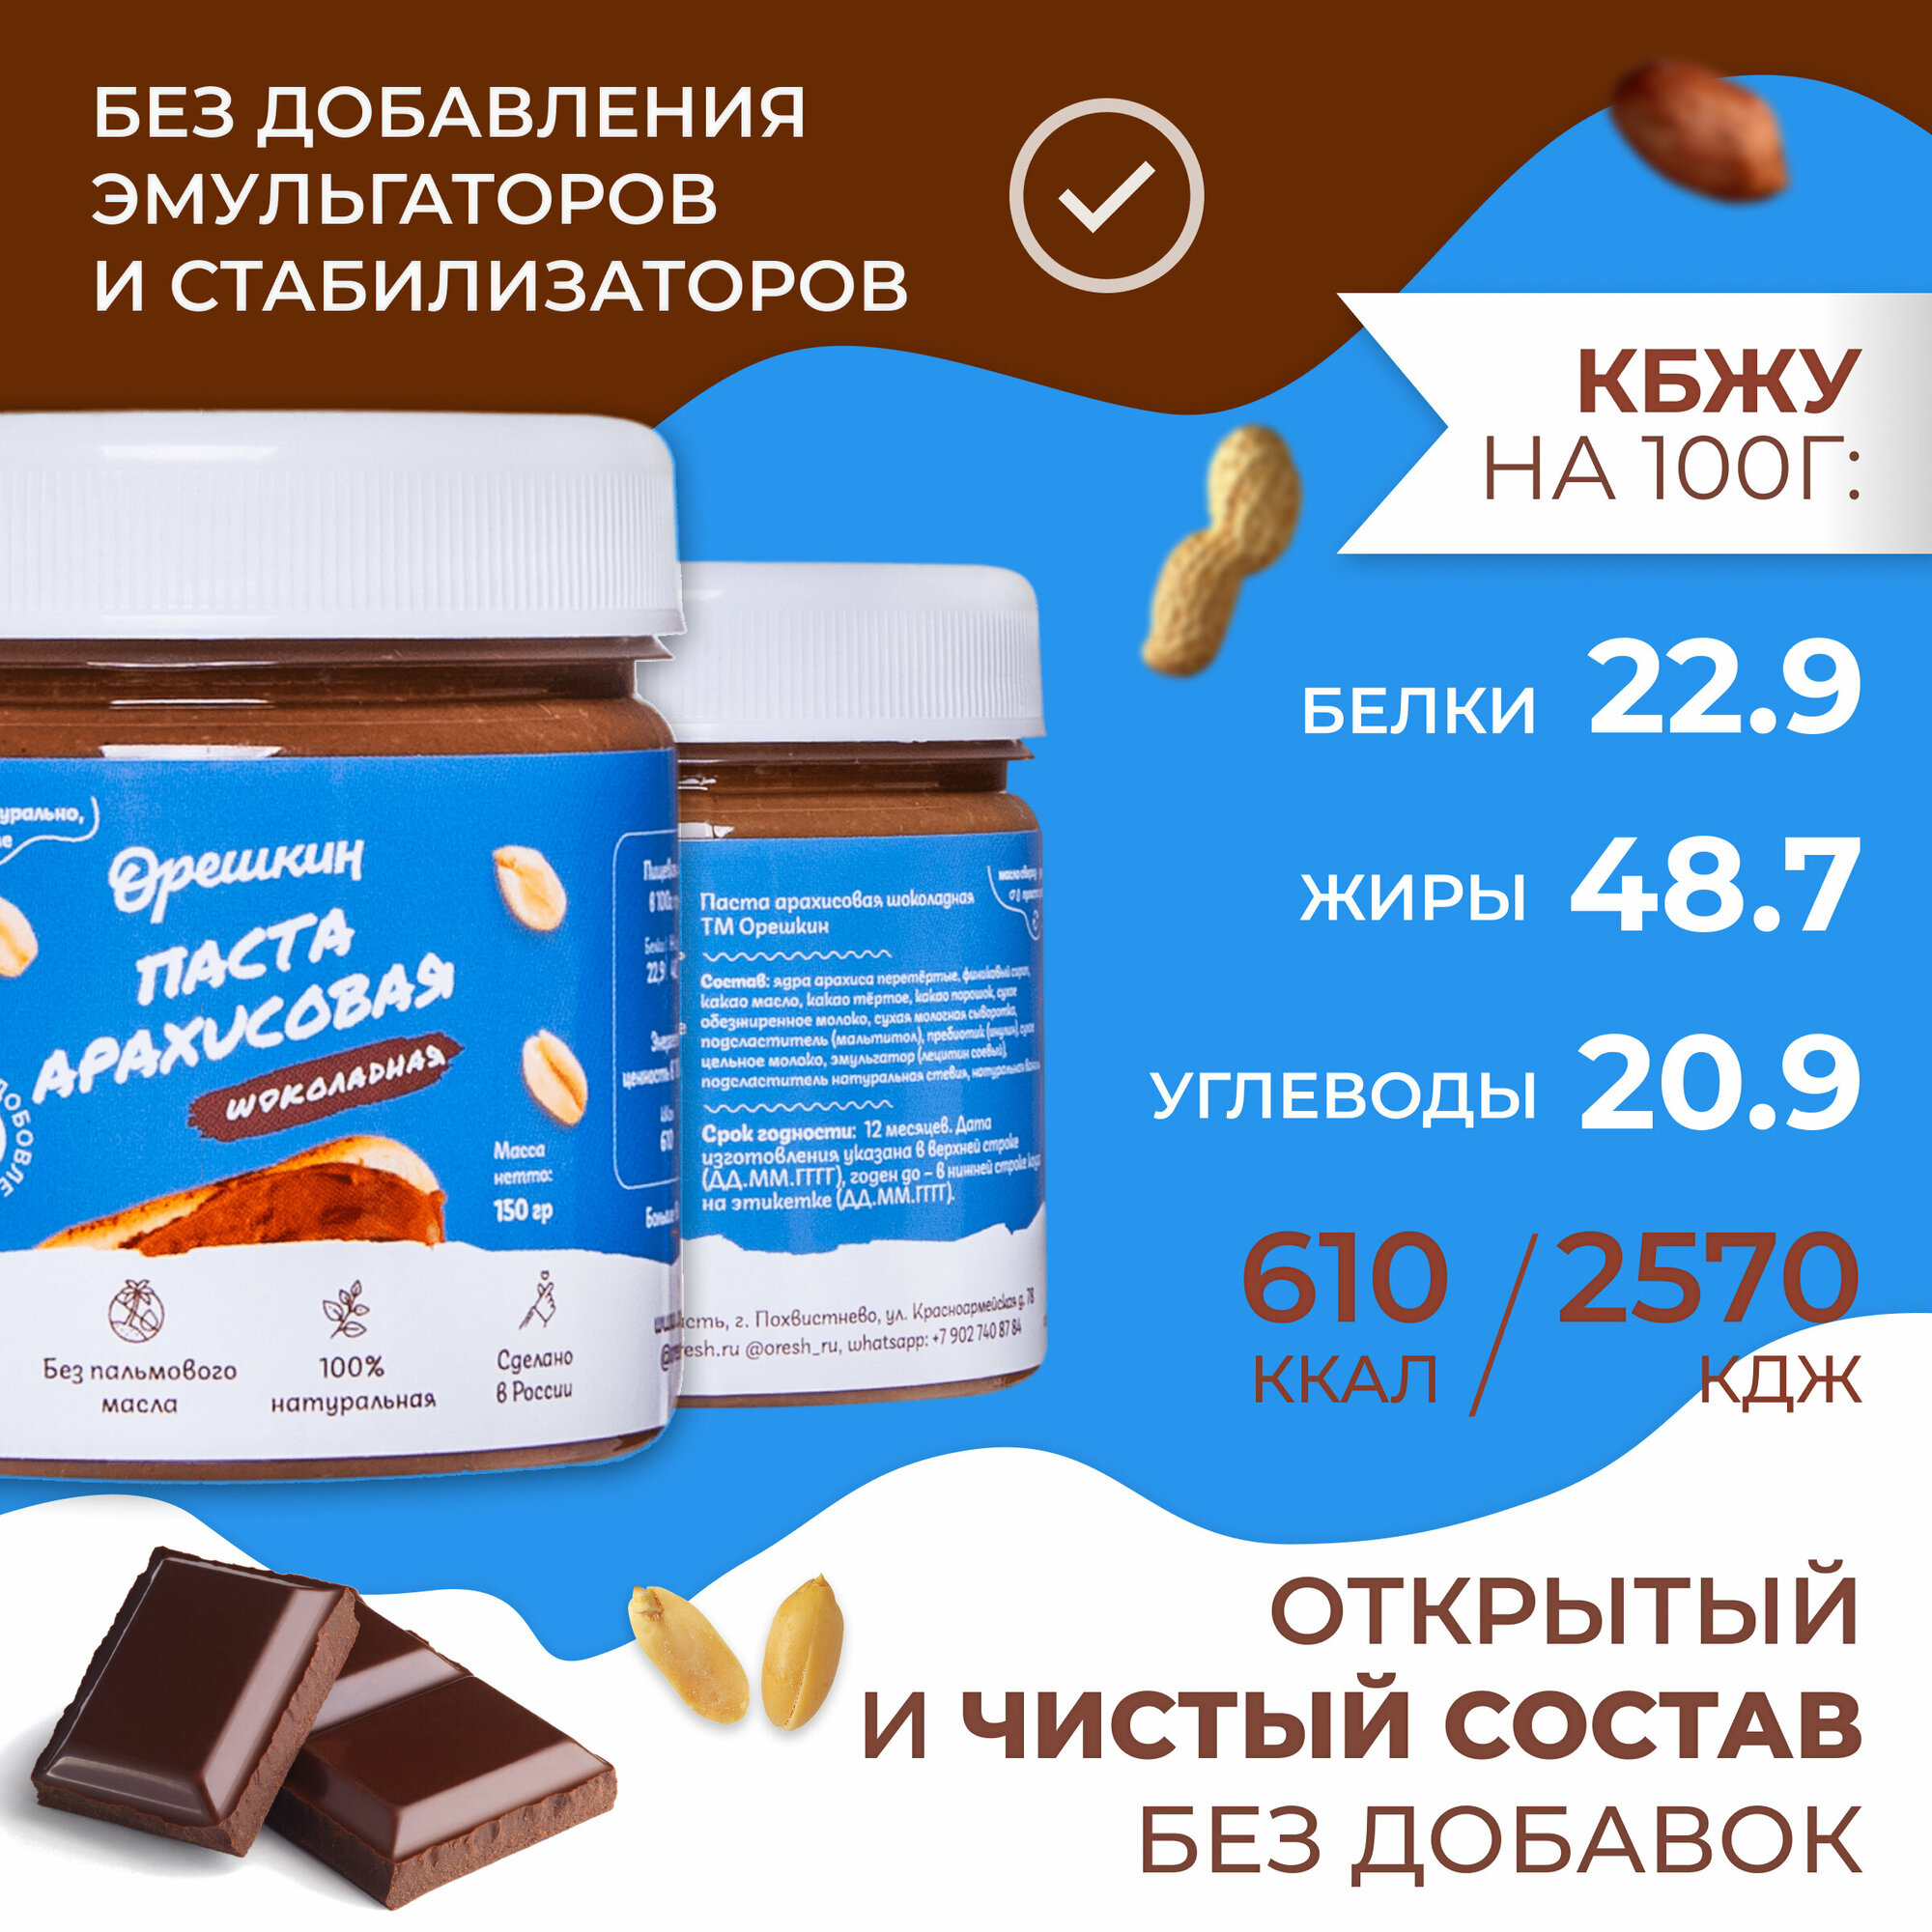 Паста арахисовая шоколадная "Орешкин" 150 гр - фотография № 2